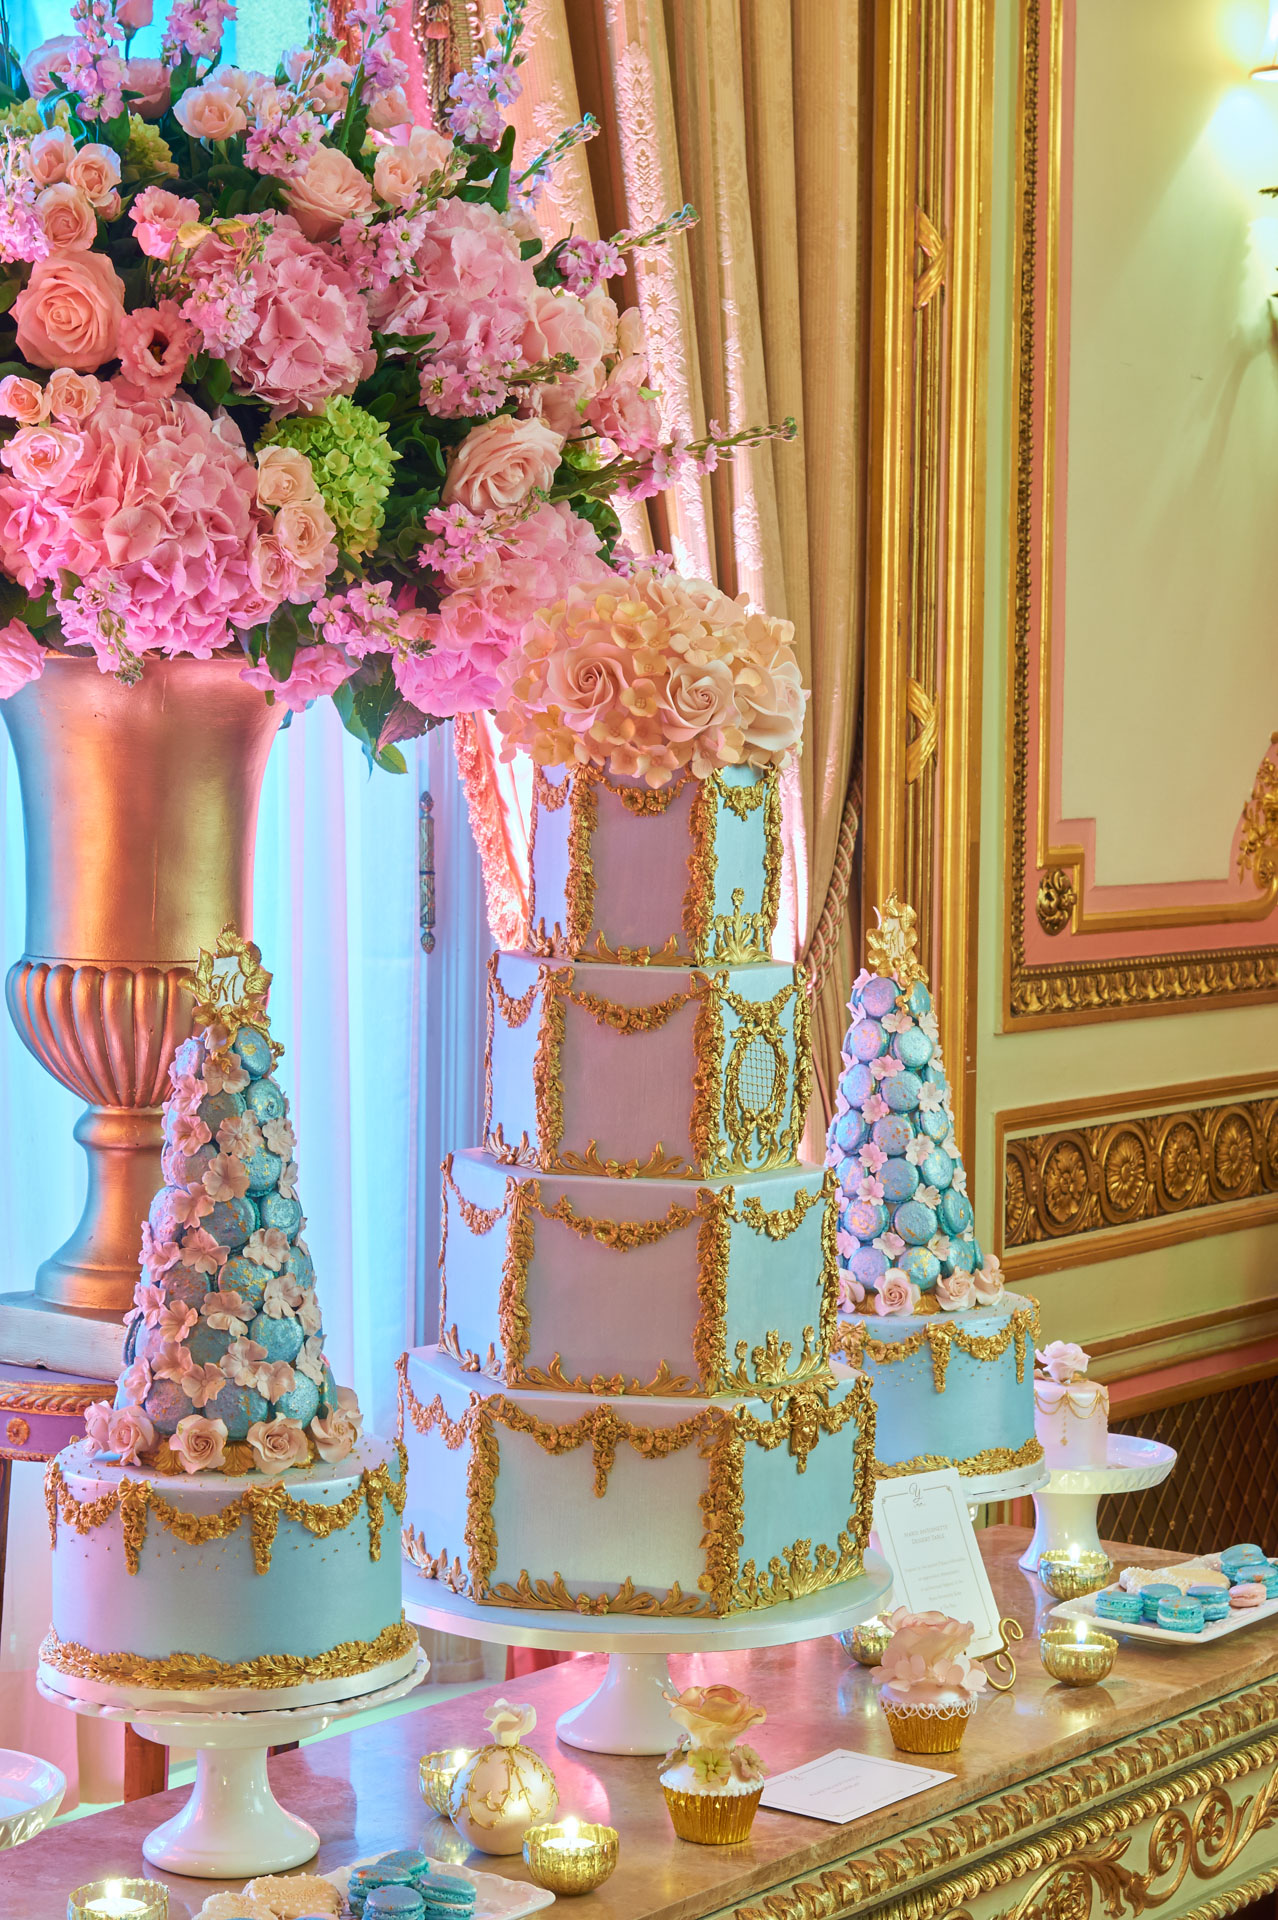 Marie Antoinette - wedding cakes by Yevnig